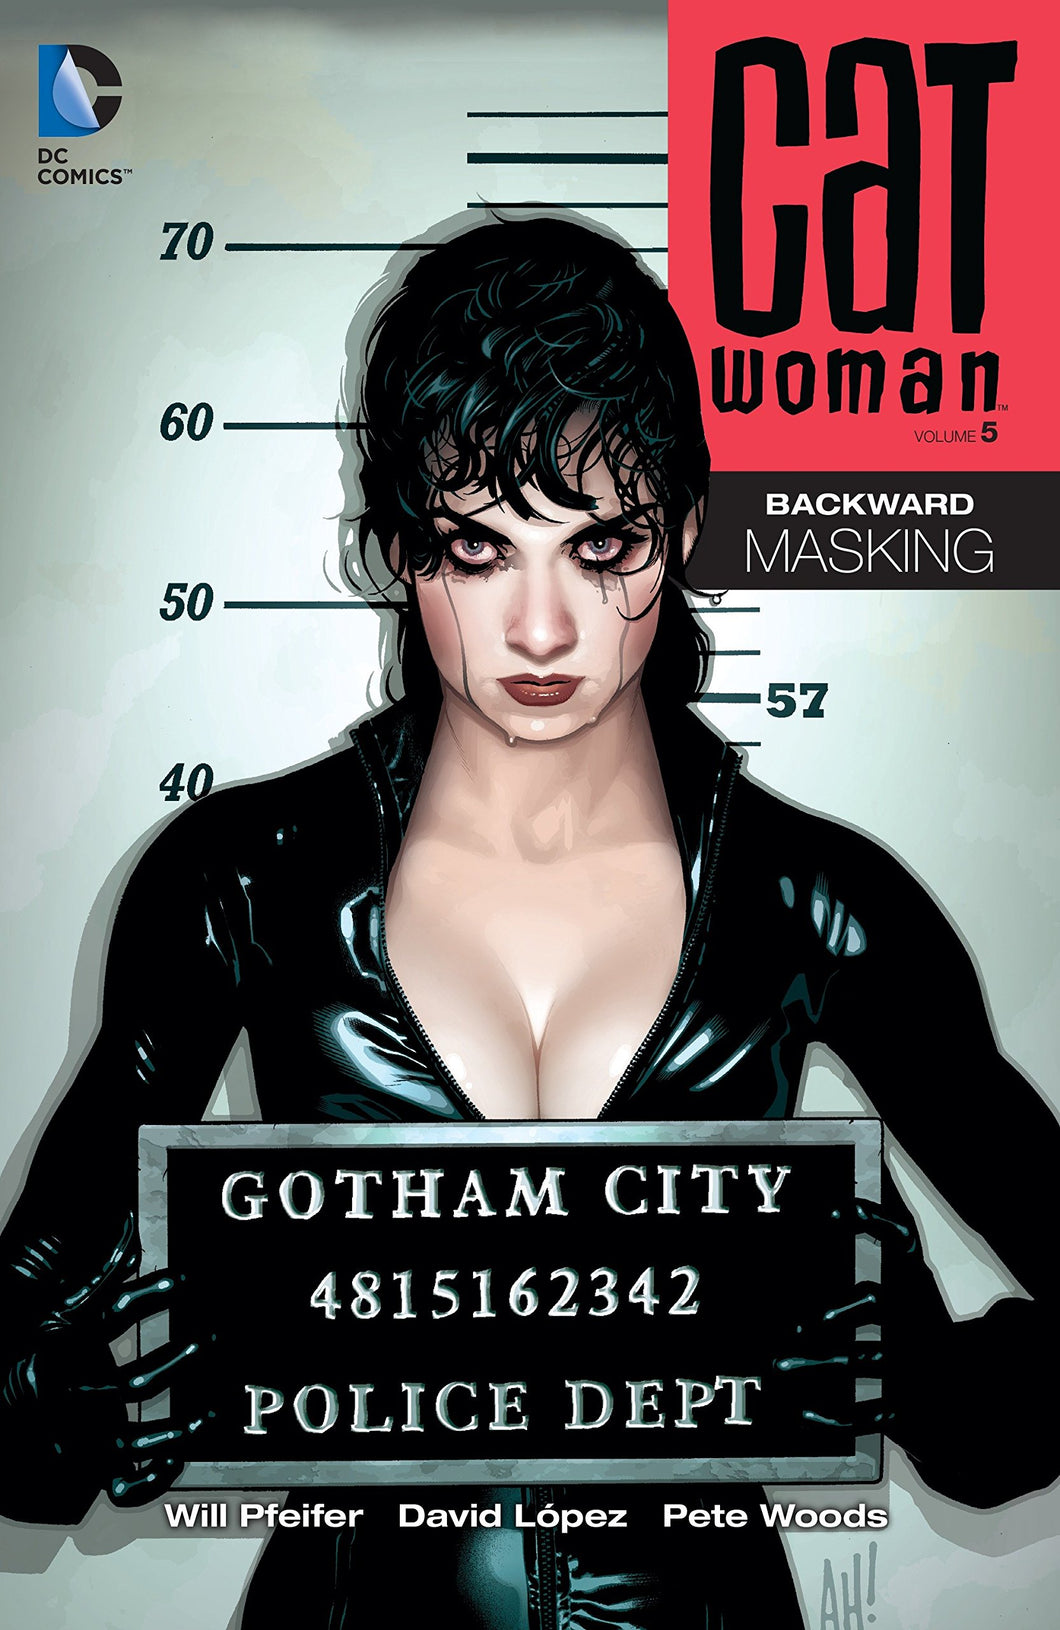 Catwoman Vol. 5 : Backward Masking